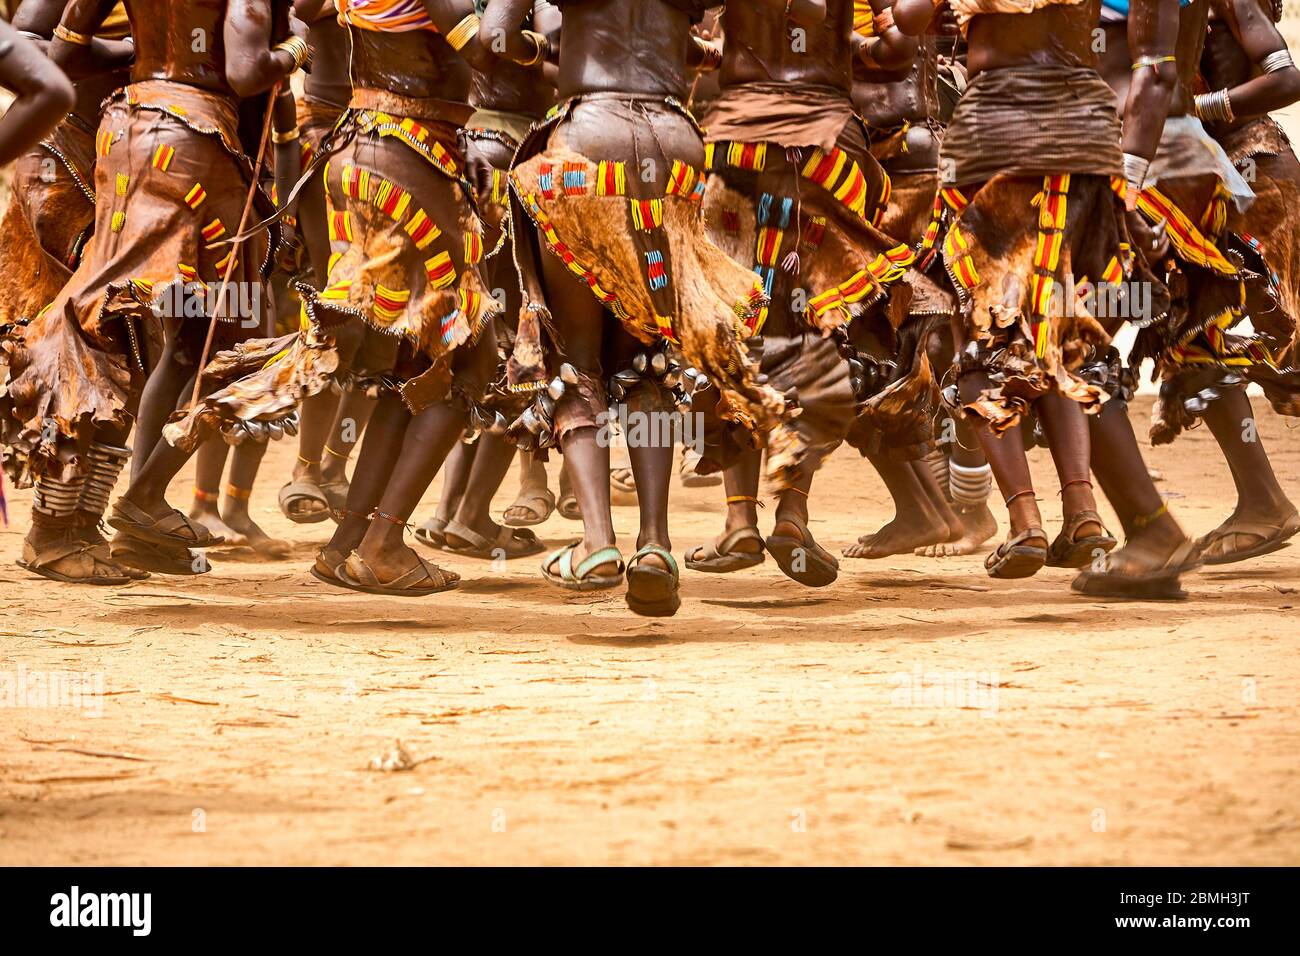 Les femmes Hamer dansent lors d'une cérémonie d'initiation pour un jeune homme. Chaque jeune homme doit sauter les taureaux pour devenir un homme. Banque D'Images